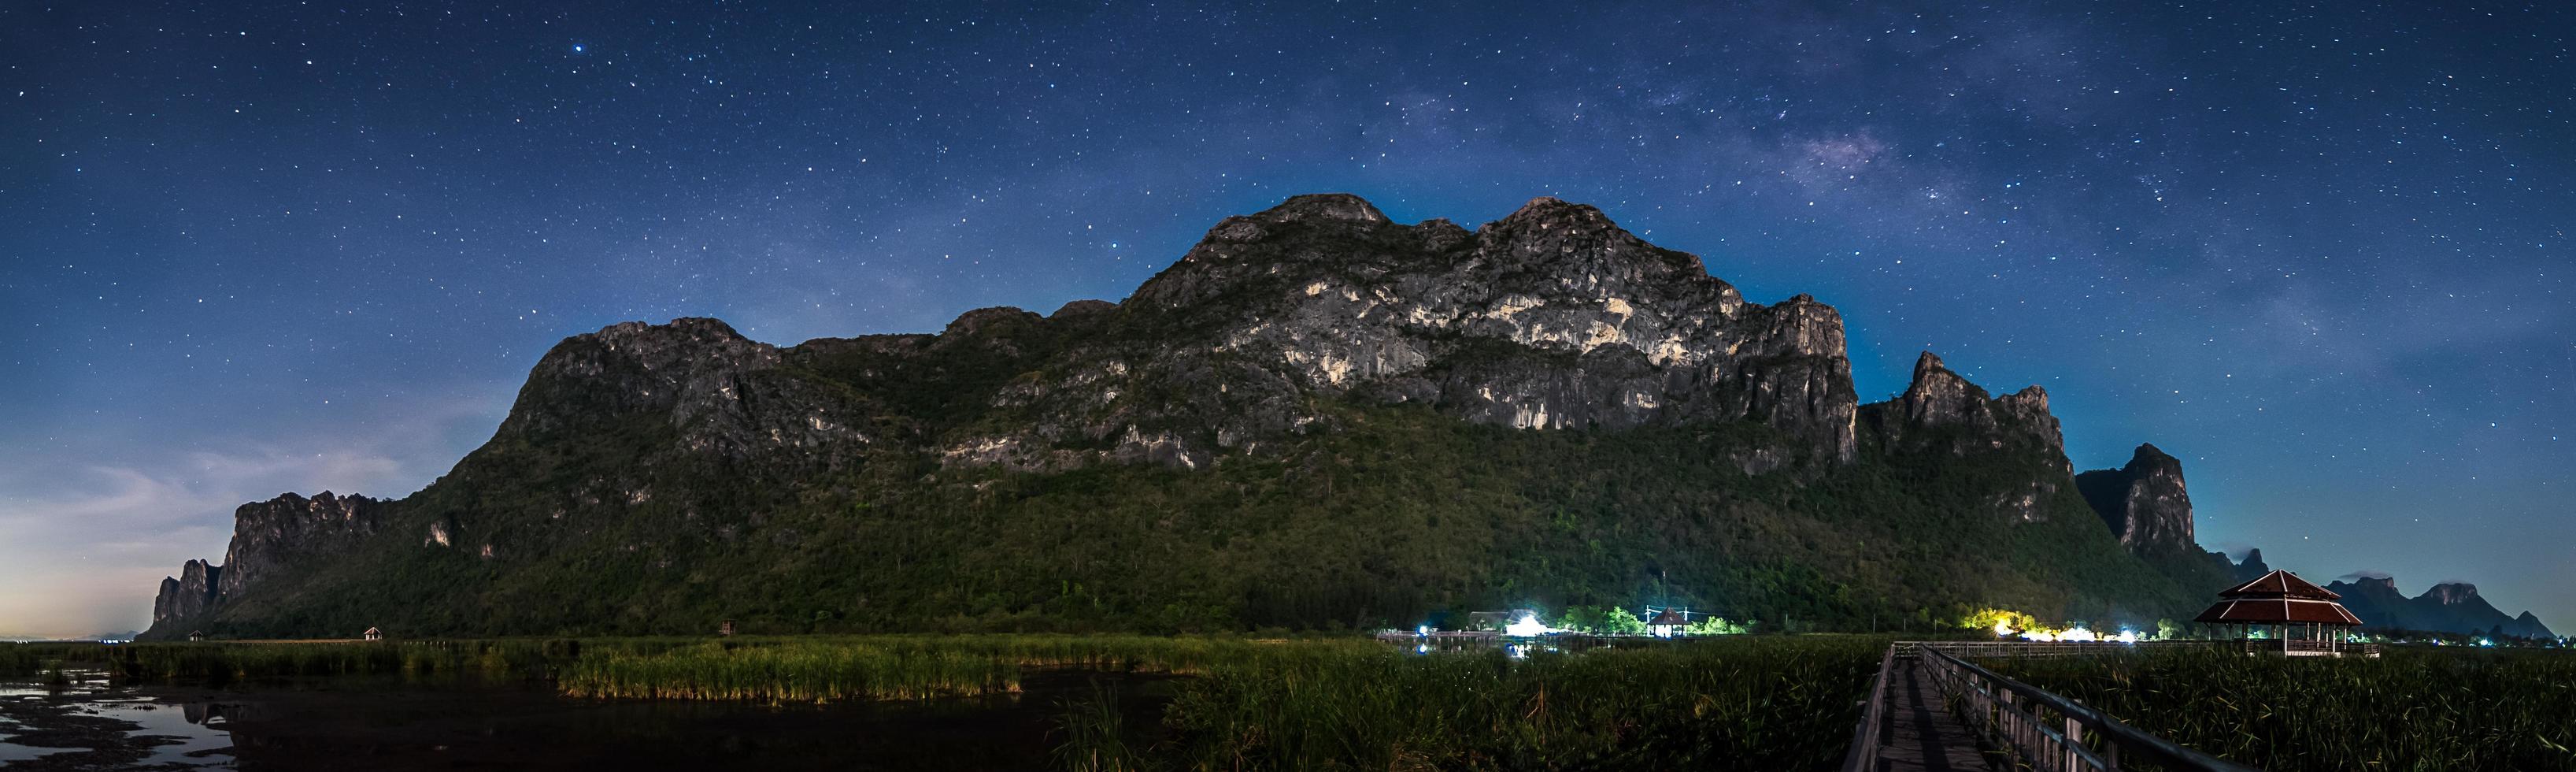 milchstraßengalaxie und sterne im nachthimmel vom khao sam roi yod nationalpark, thailand foto